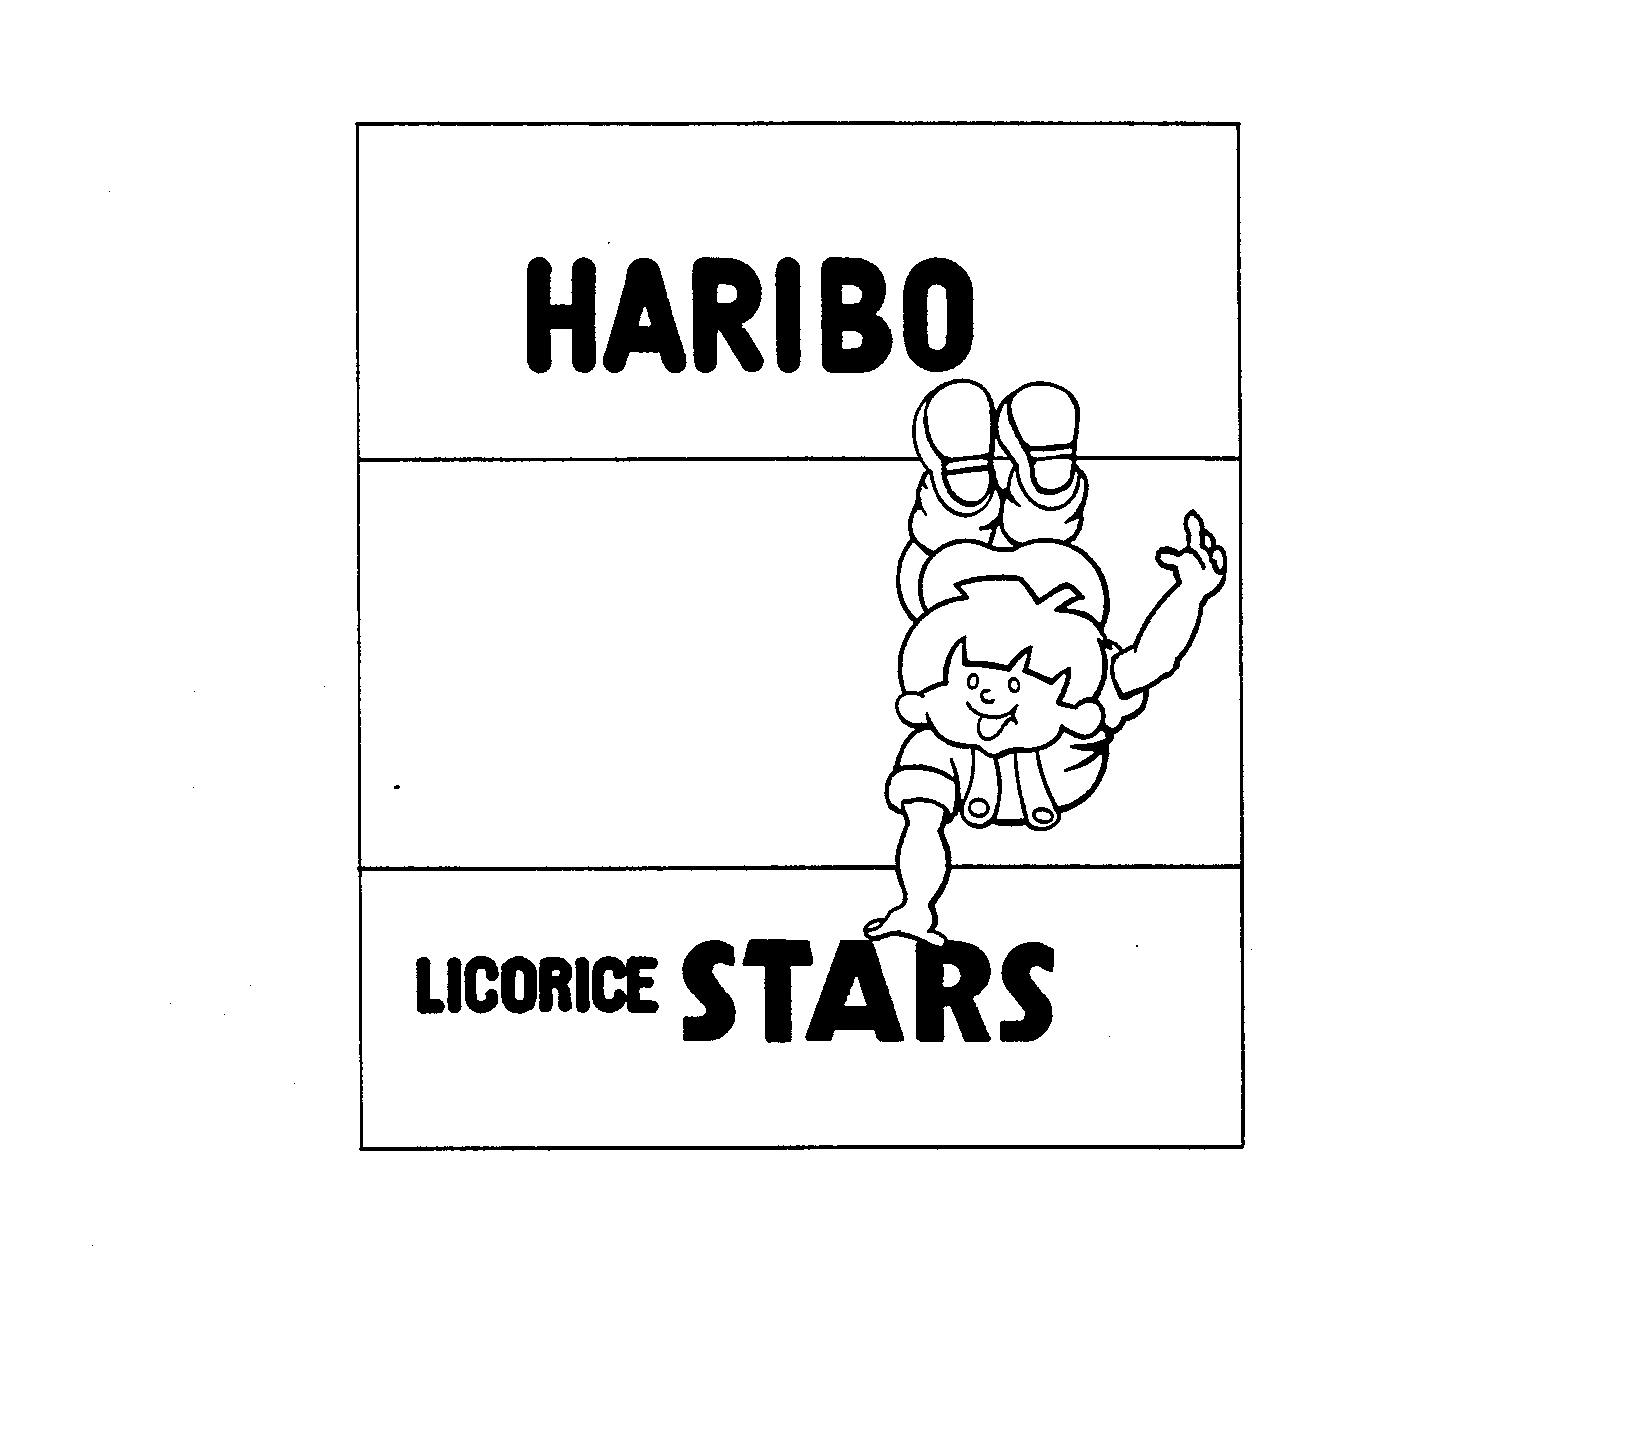  HARIBO LICORICE STARS